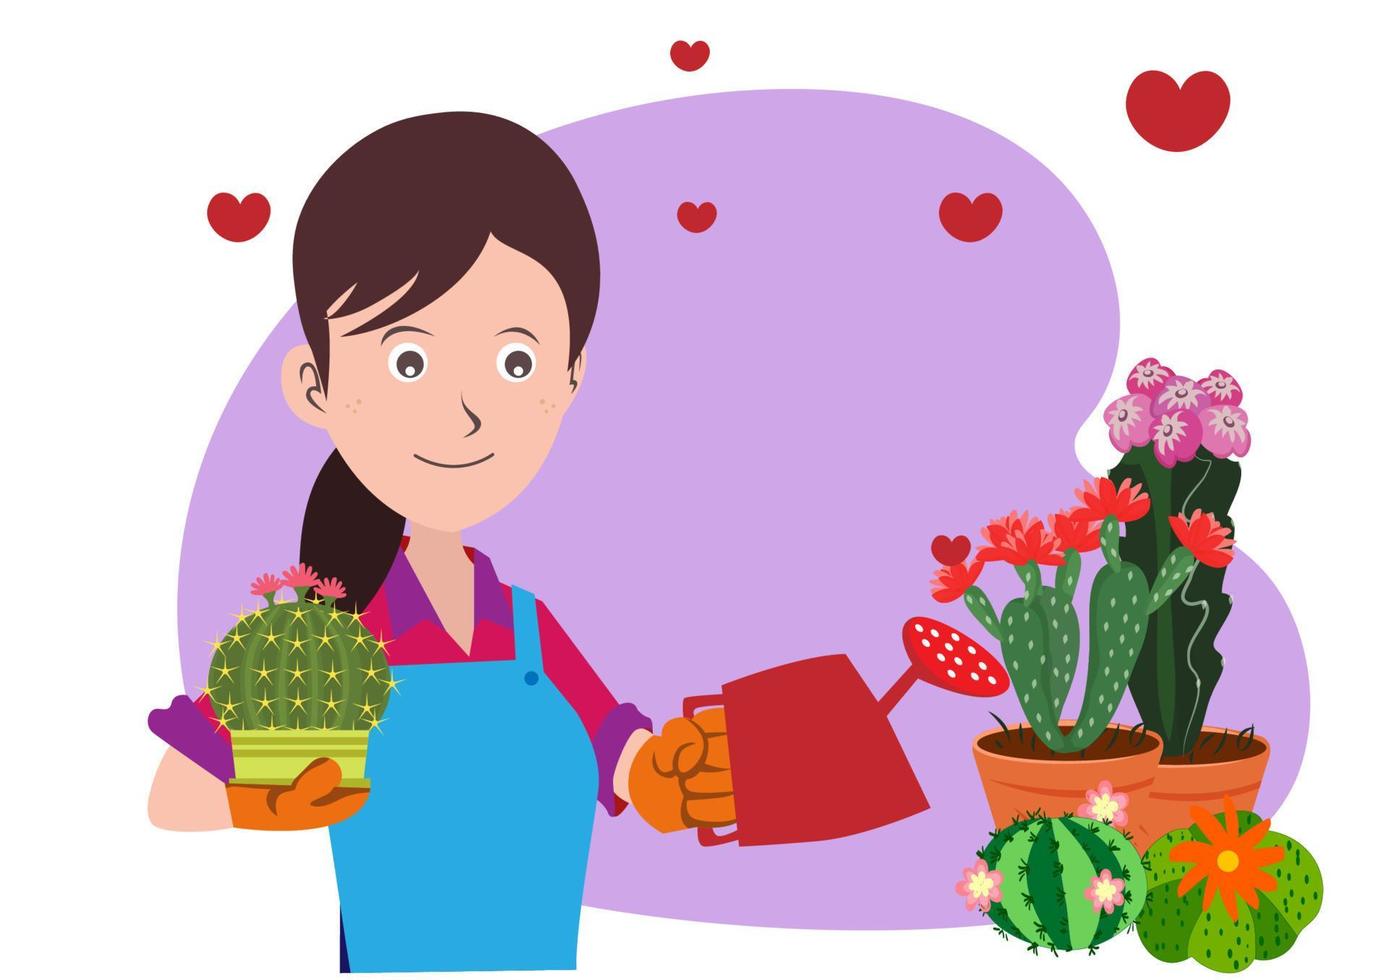 propriétaire du magasin de fleurs de cactus, elle prend soin des plantes et les entretient. embellir le sapin de sa boutique. vecteur d'illustration de dessin animé de style plat